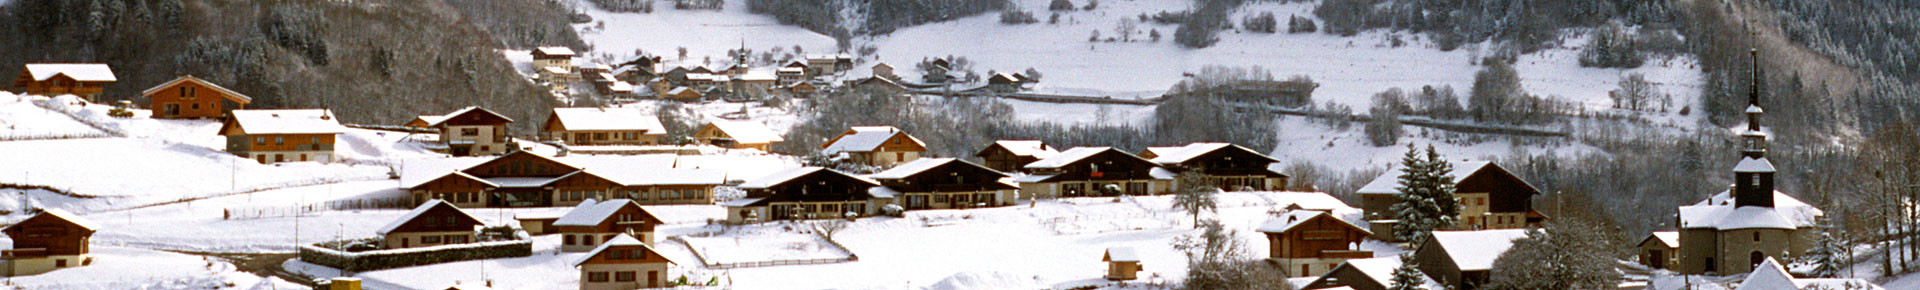 Village de La Vernaz en hiver